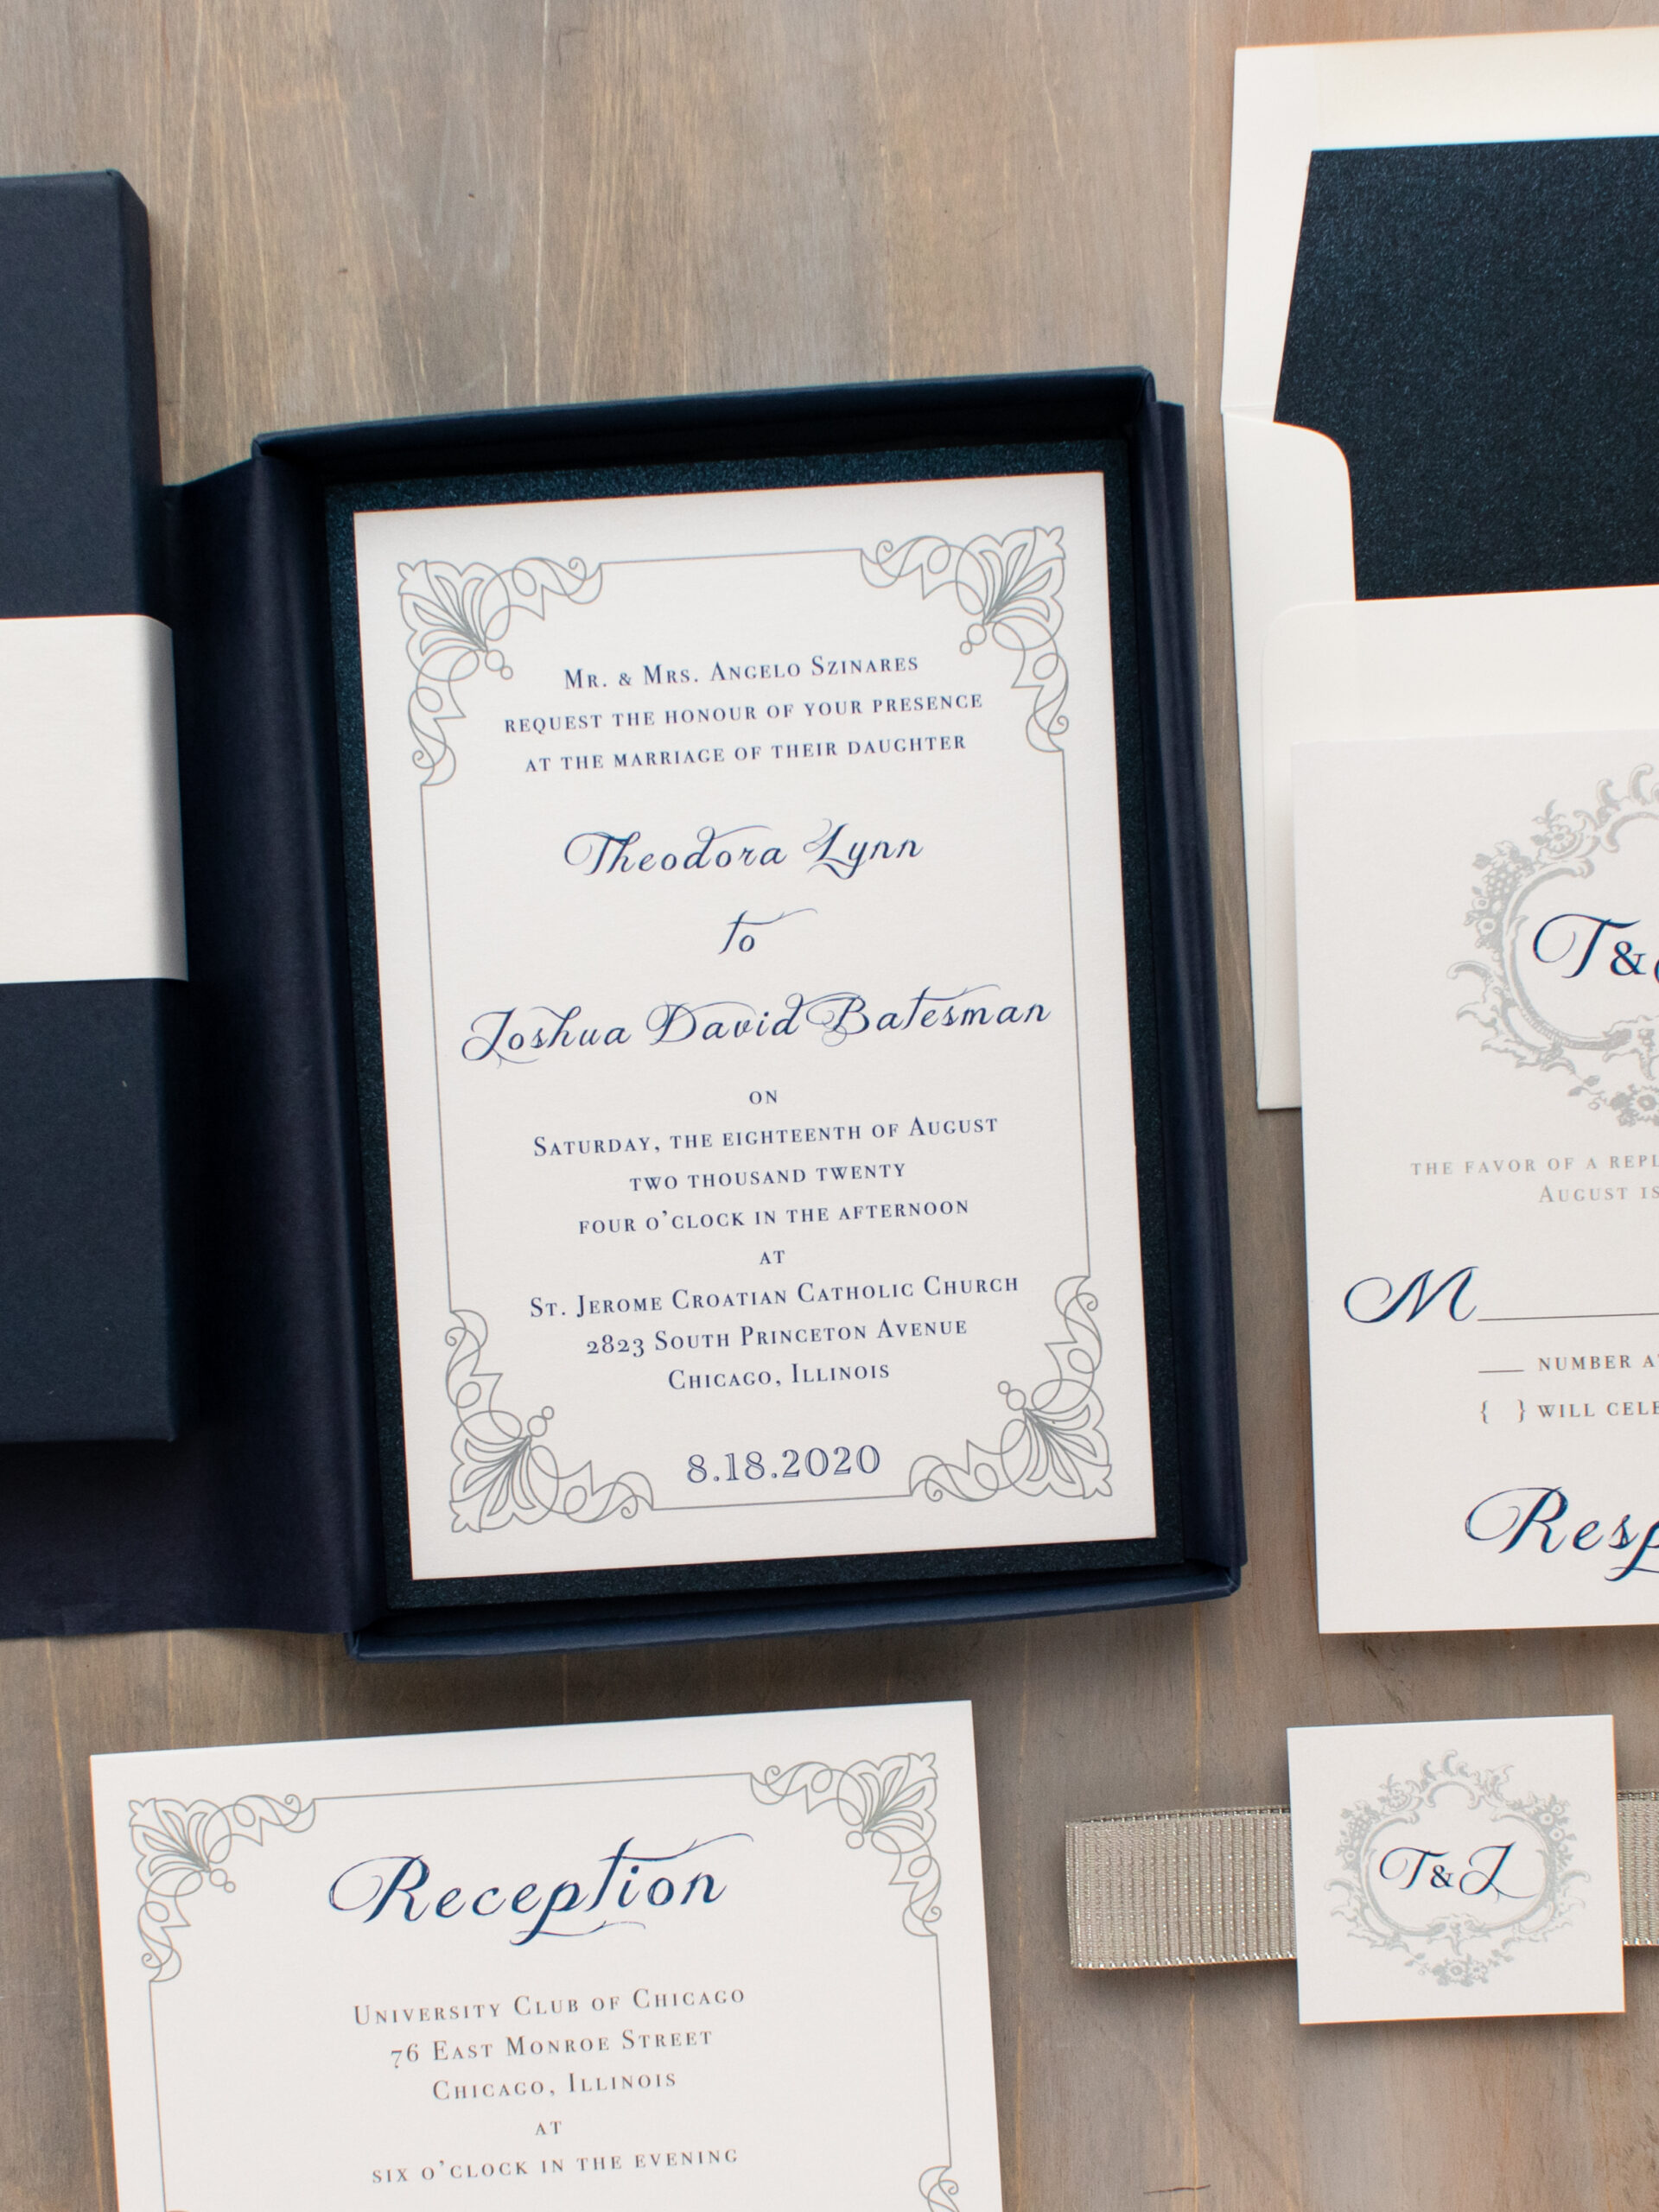 ADD ON ORDER Elegant Formal Navy Blue, Gold Glitter and Pink Blush Layered  Wedding Invitation, Envelope Liner, Rsvp & Inserts